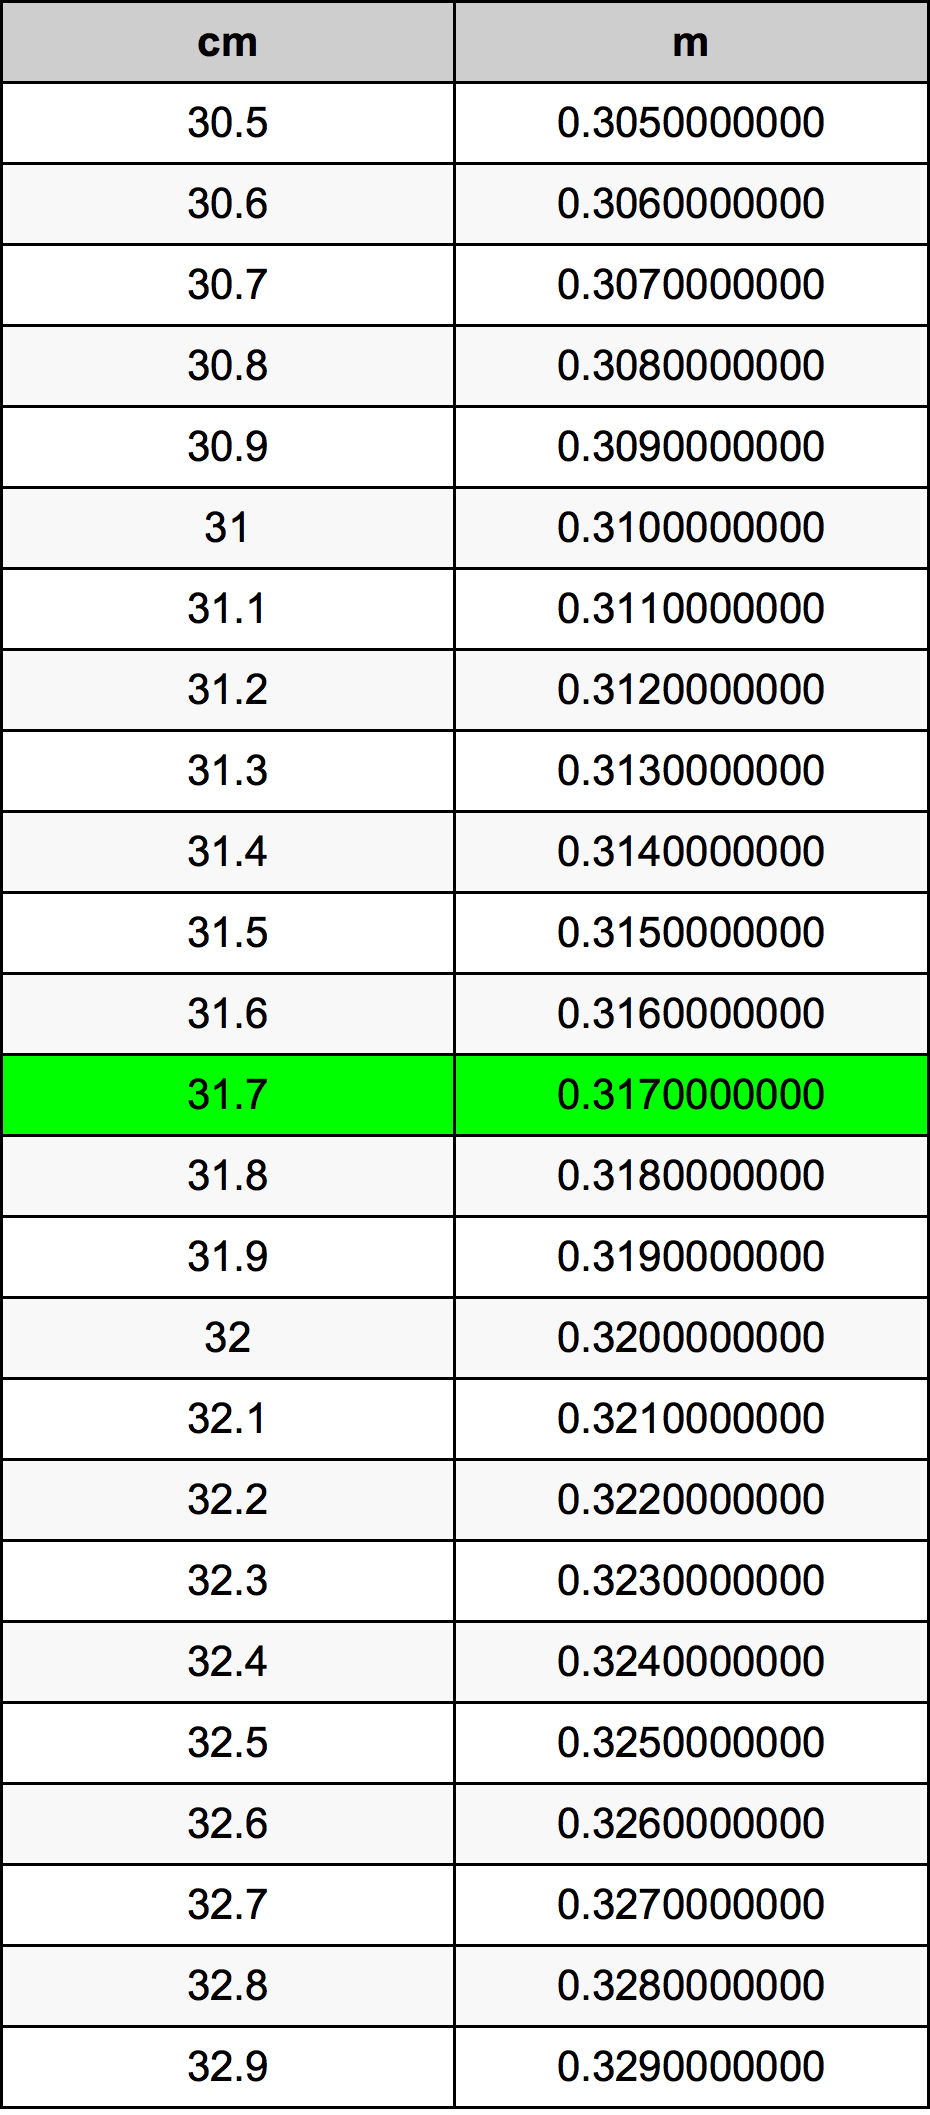 31.7 Centiméter átszámítási táblázat